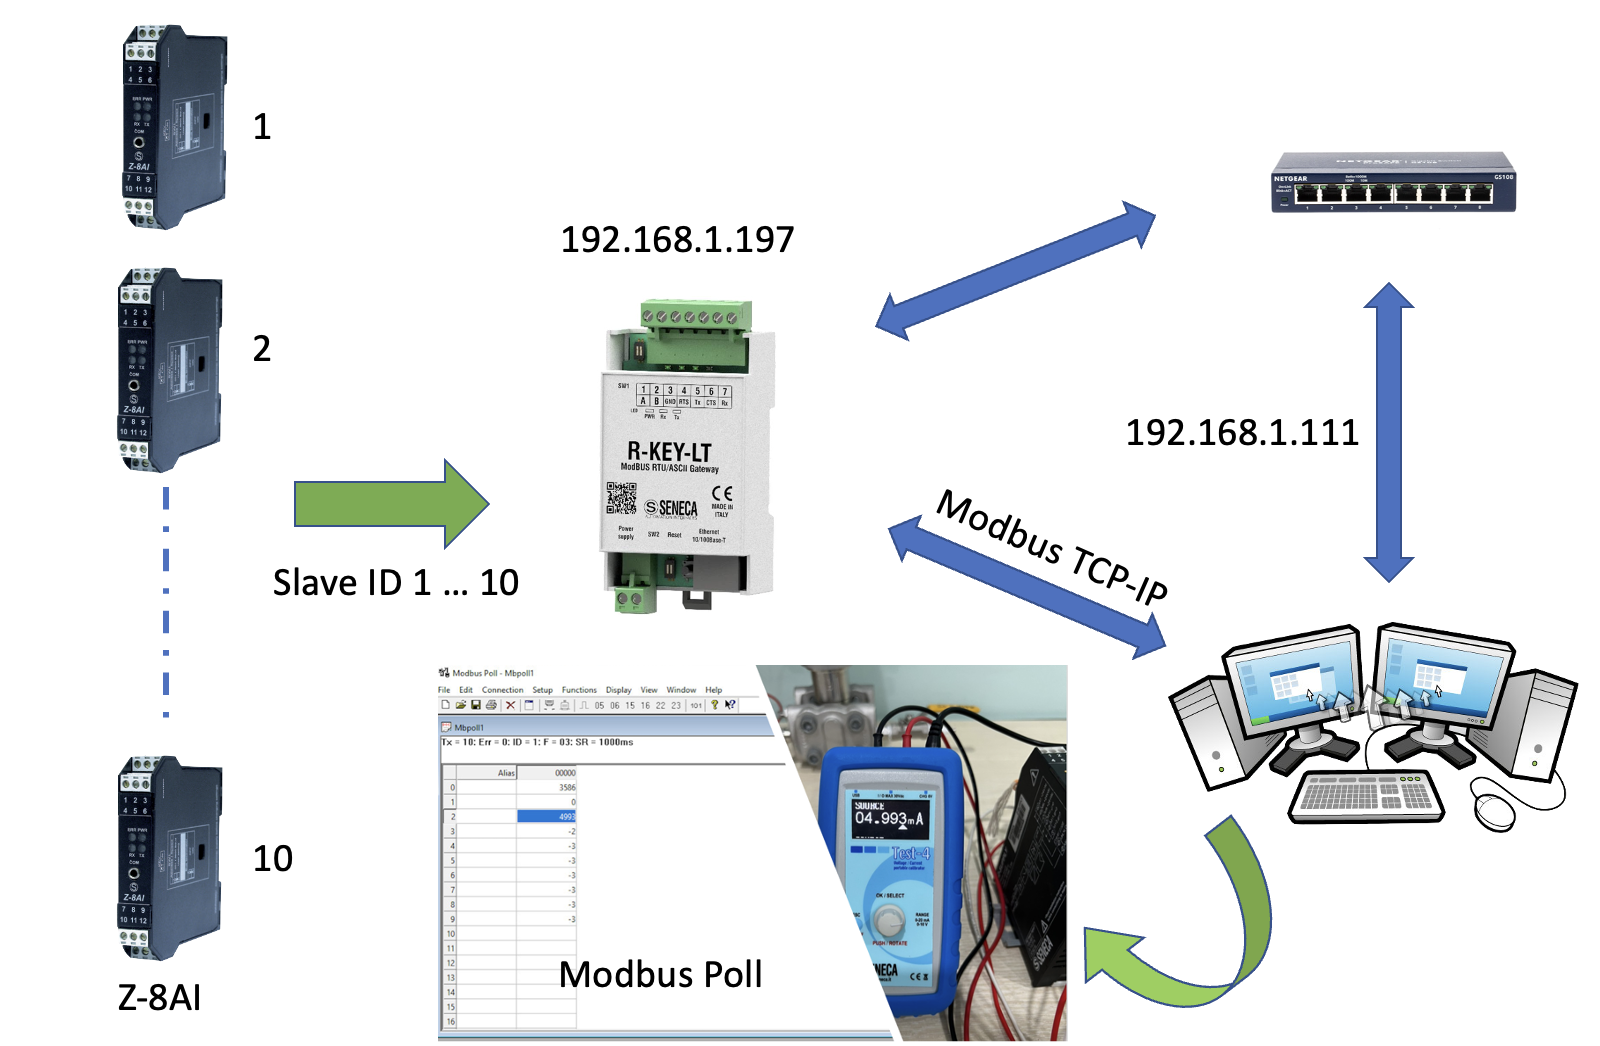 Hướng dẫn kết nối Modbus TCP-IP với Modbus poll thông qua R-KEY-LT